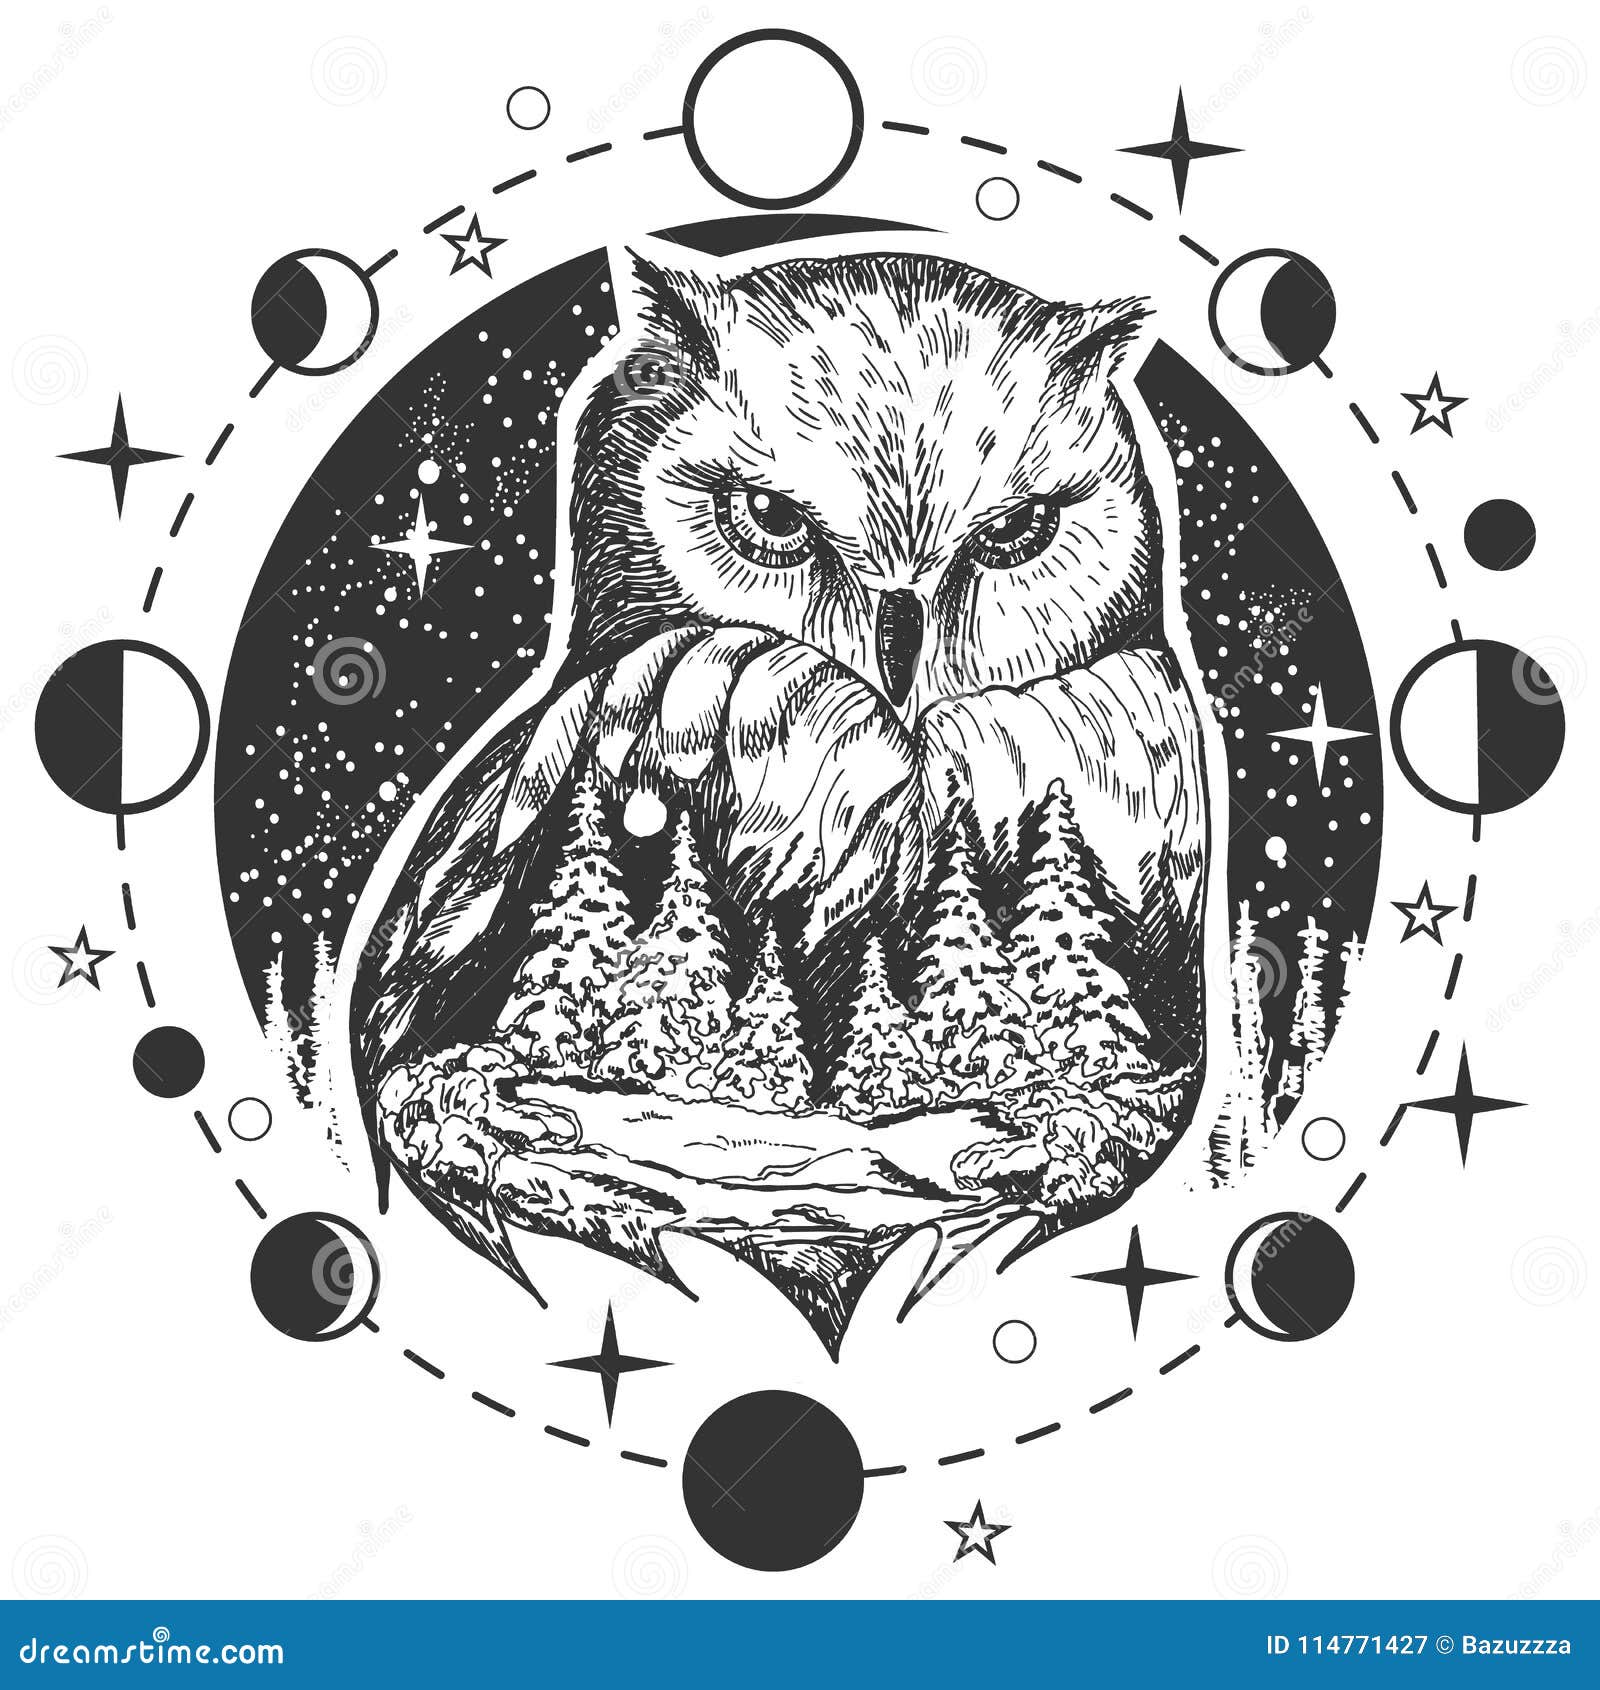 An #owl #tattoo #blackandgraytattoo I did last night with … | Flickr